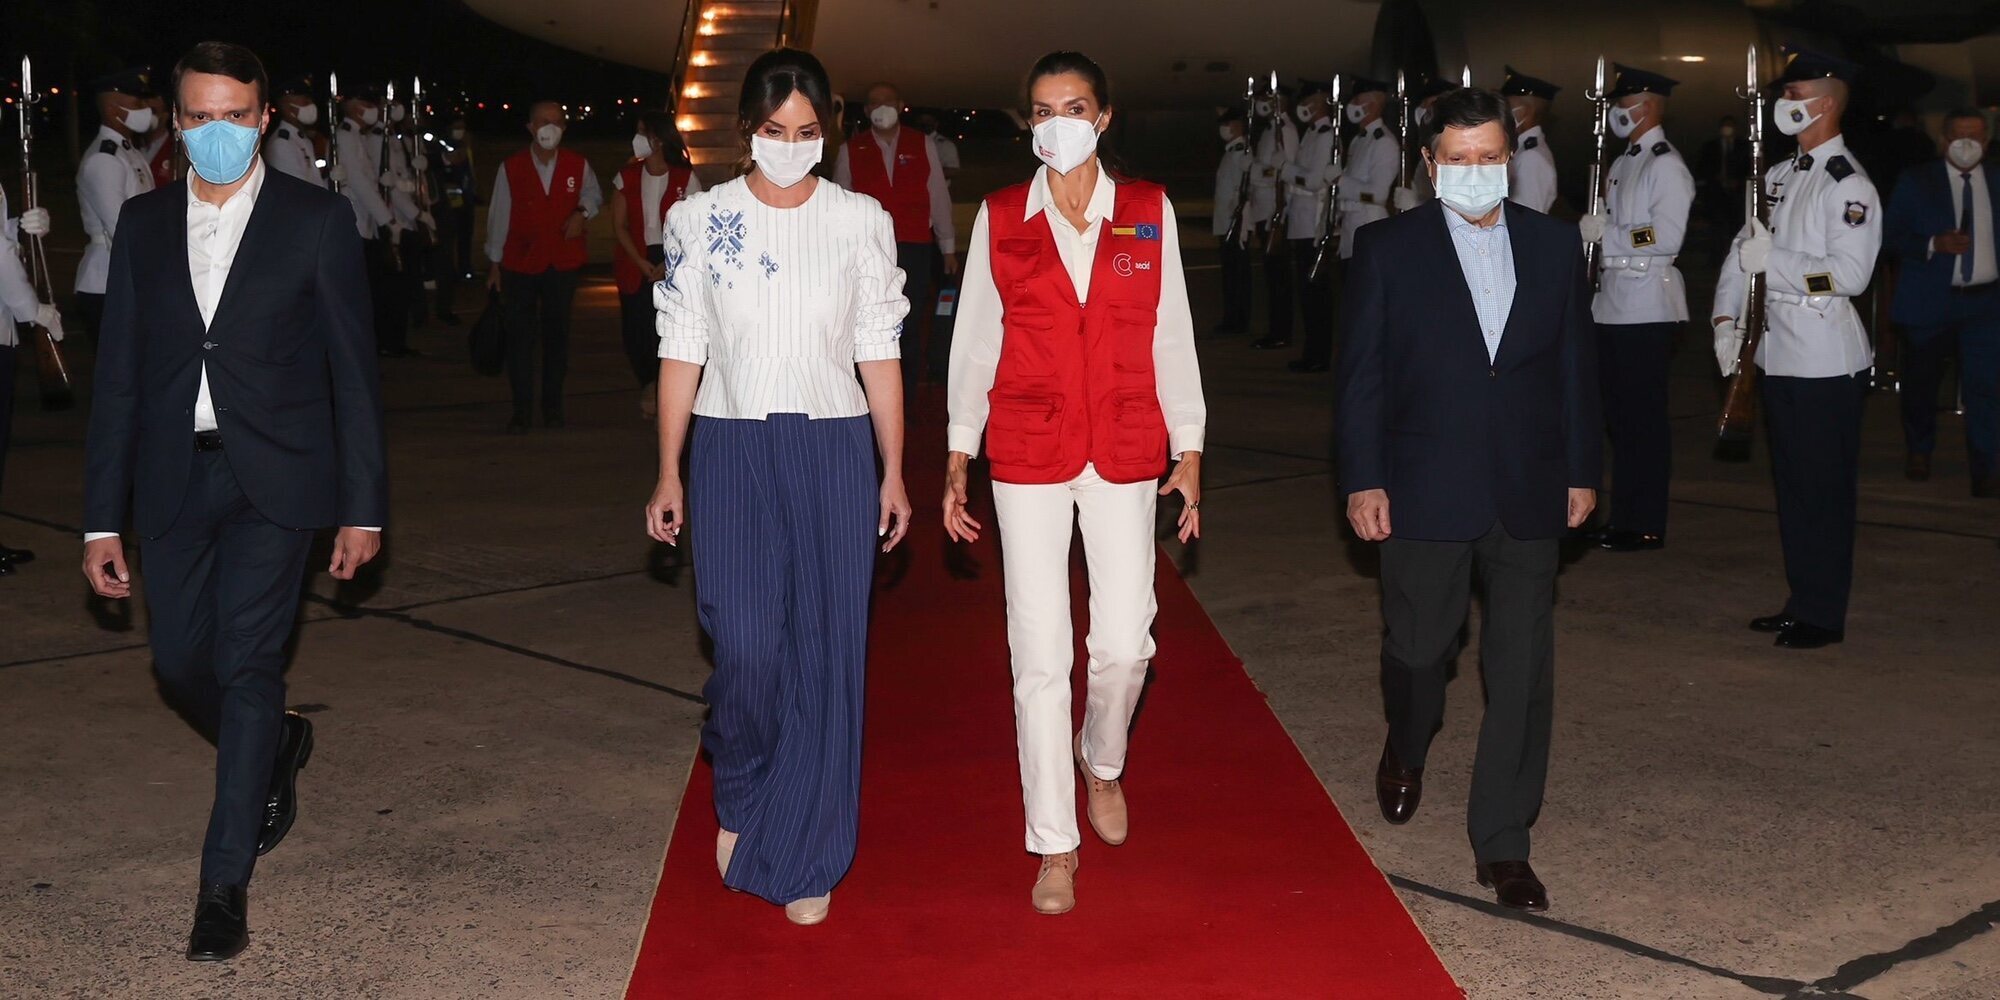 La Reina Letizia comienza su viaje de cooperación en Paraguay: gran recibimiento, ropa de cooperante y mucha expectación